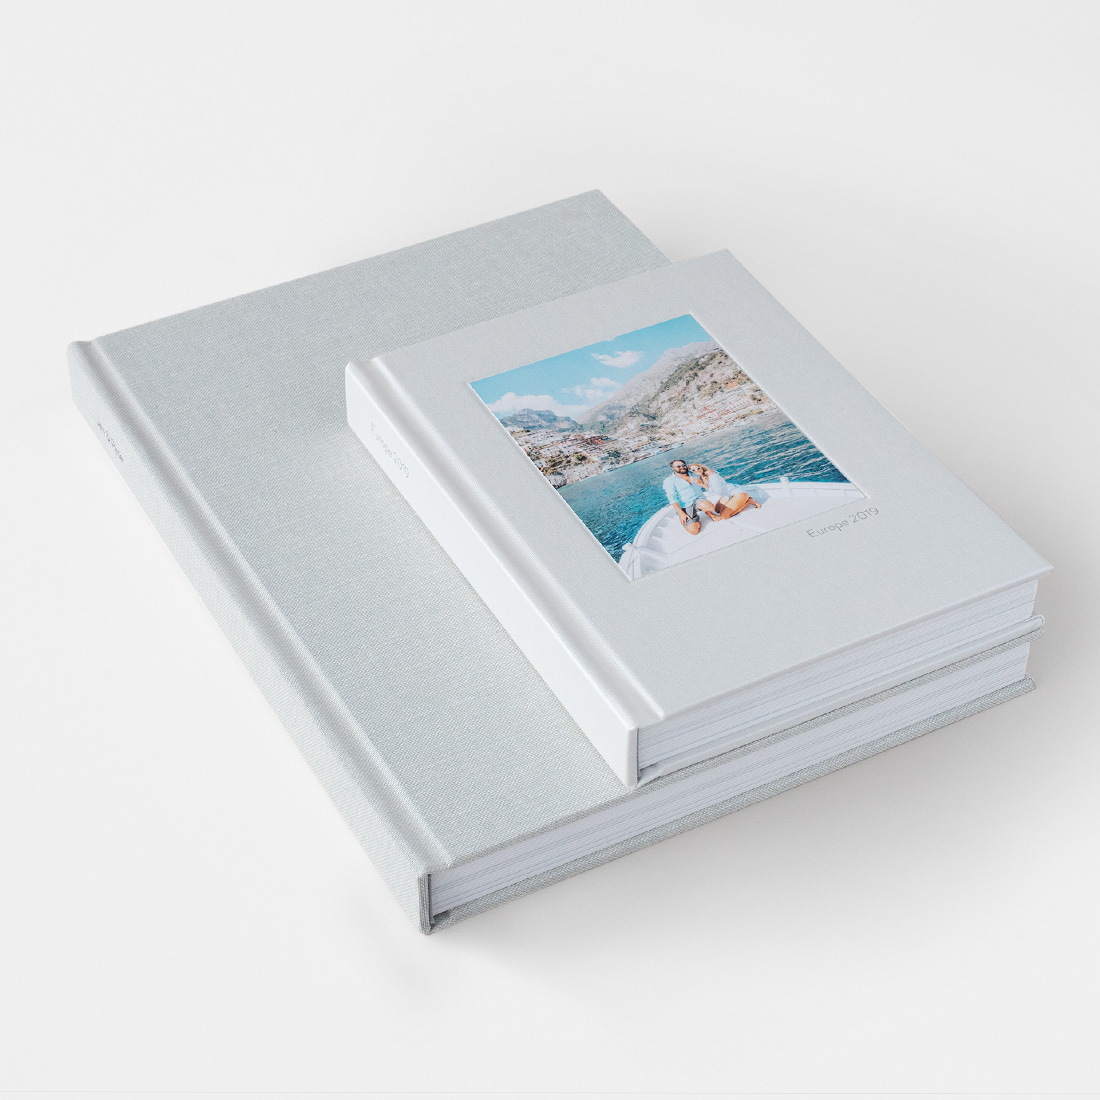 Fotolibri e Album Fotografici Di Qualità - MILK Books